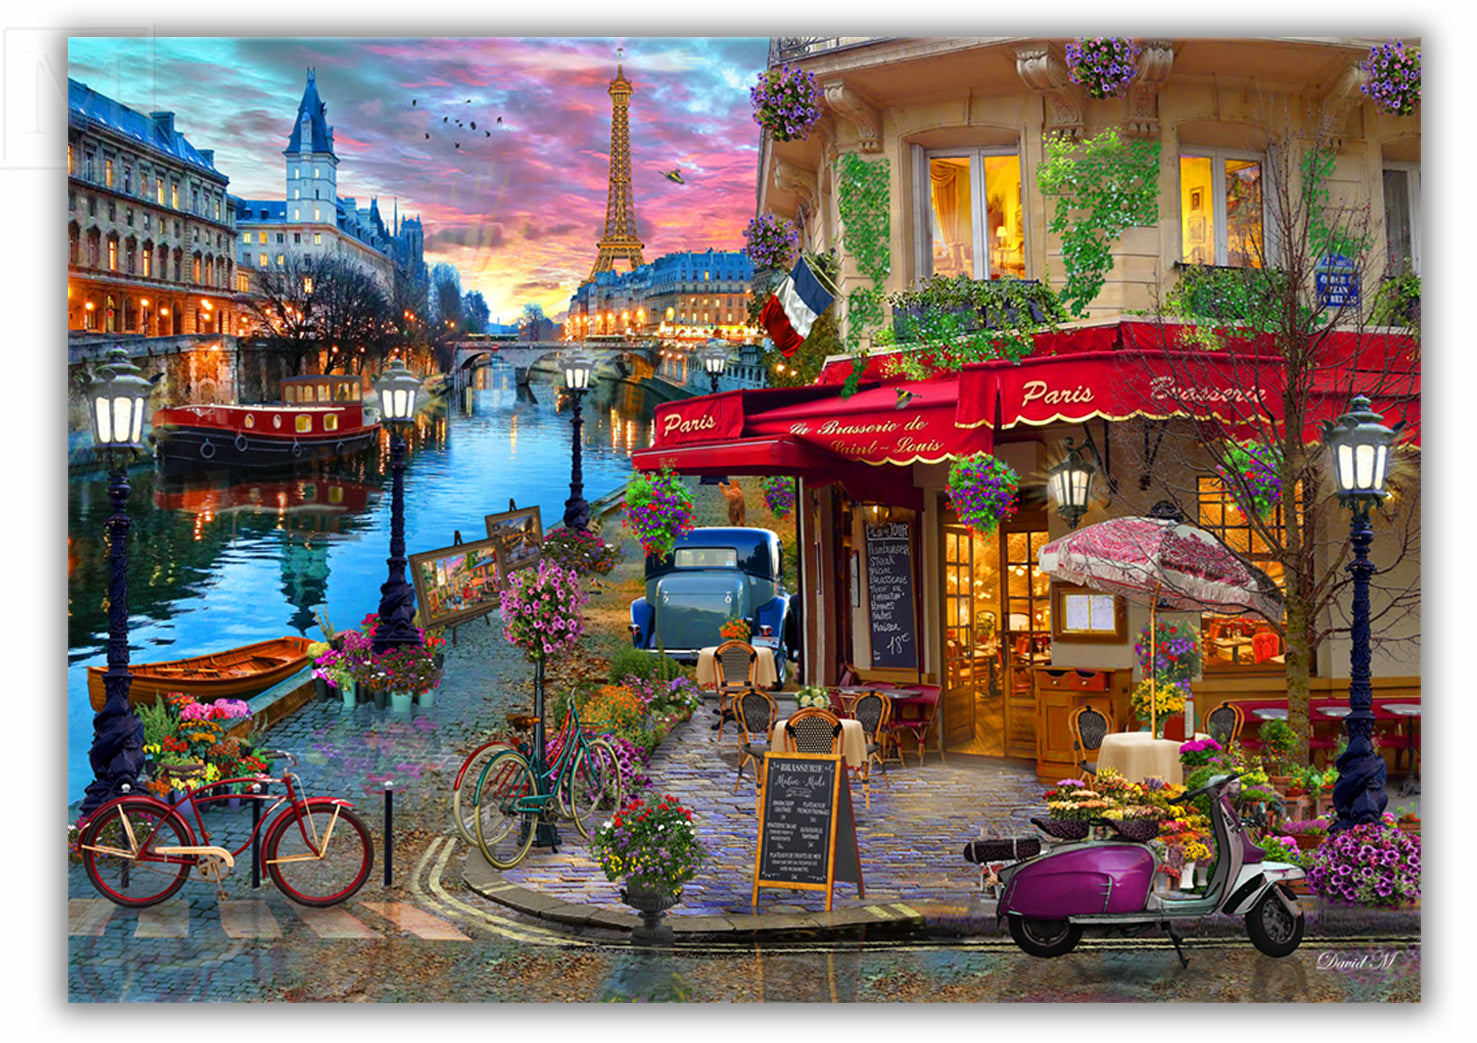 Rive Droite at last: La Grande Épicerie De Paris has crossed the Seine  river! - Mosaic